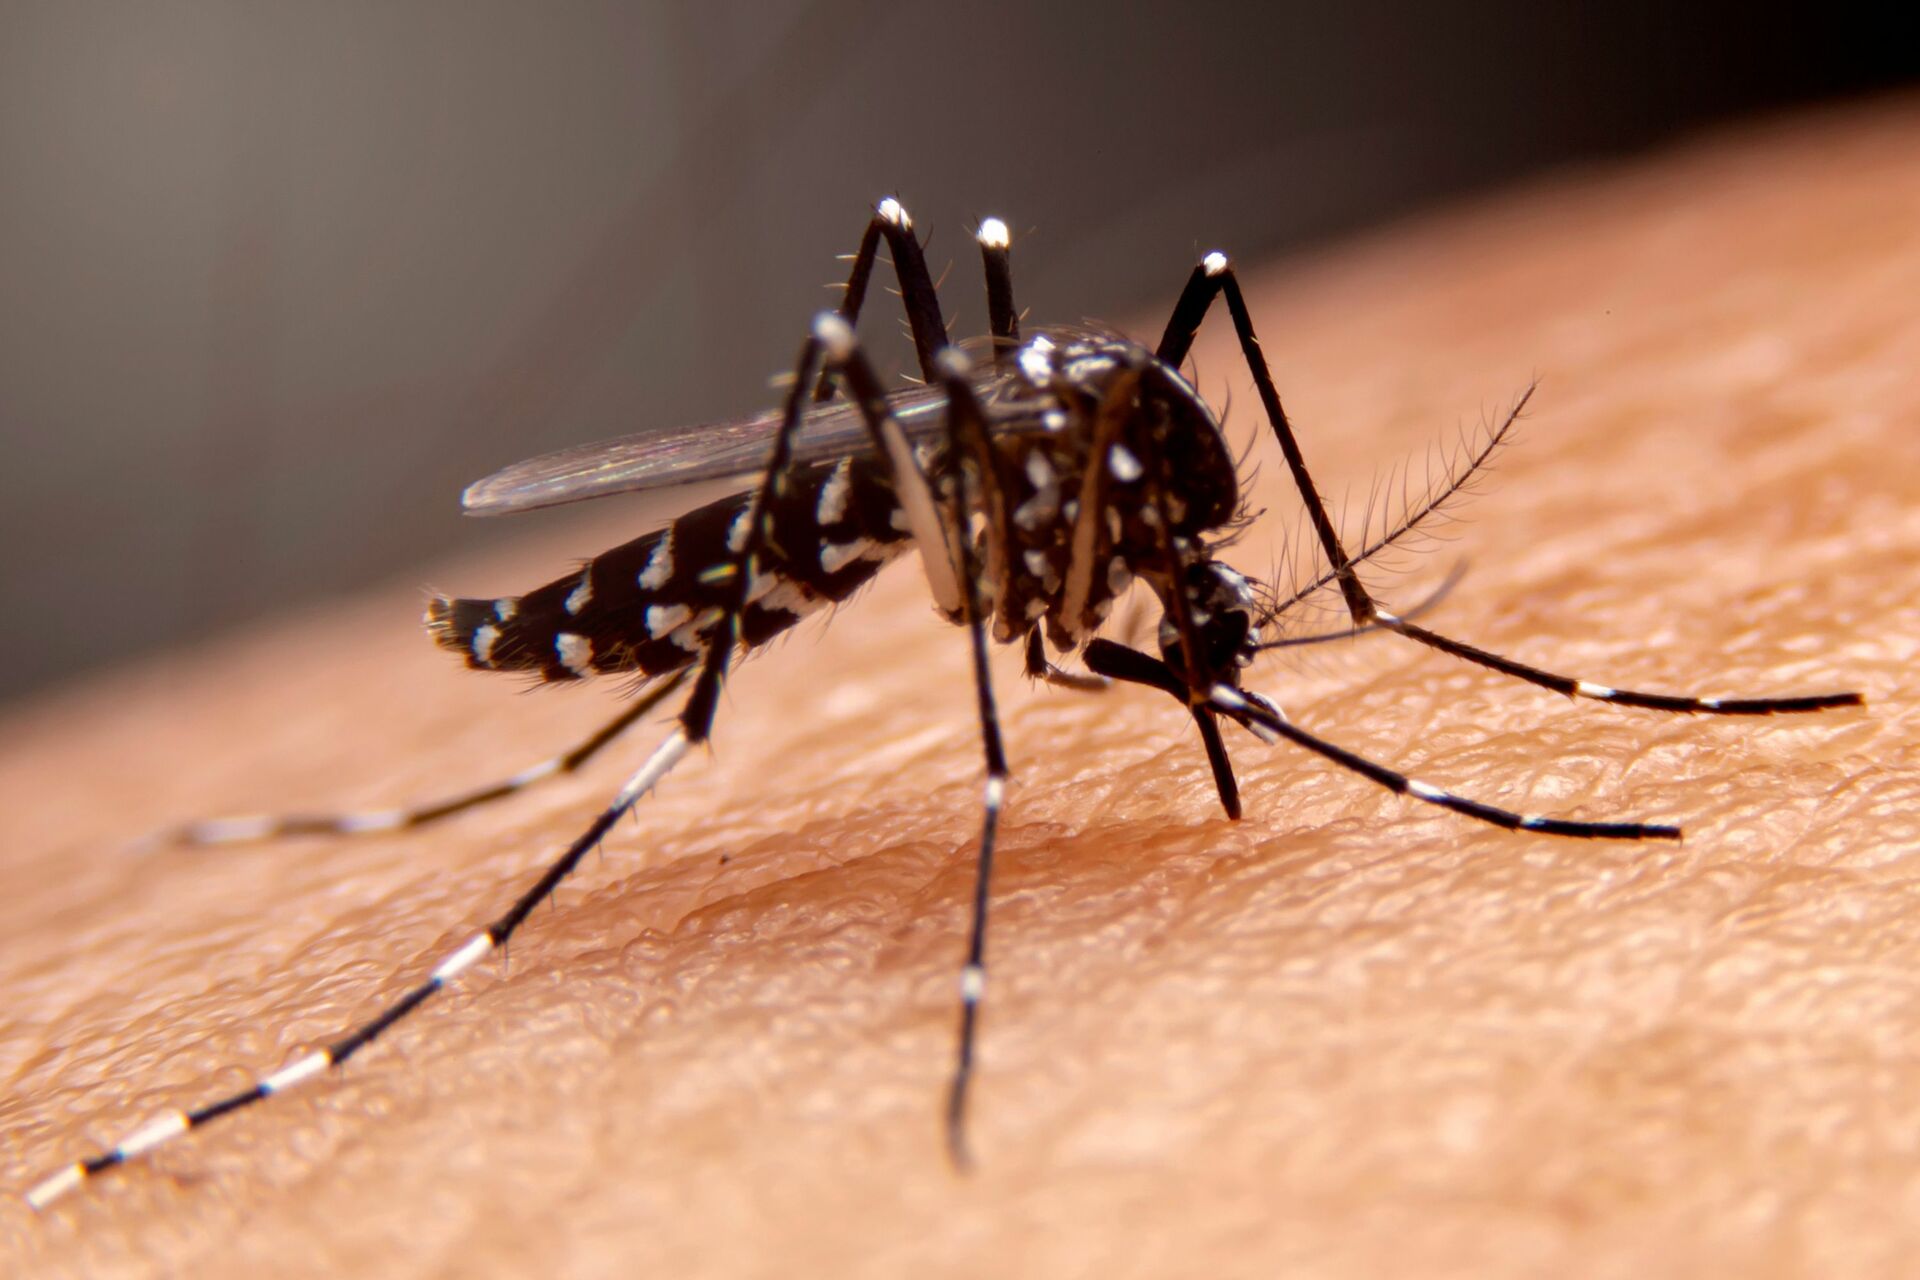 El virus se transmite a los seres humanos por la picadura de mosquitos hembra infectados, principalmente del género Aedes aegypti.